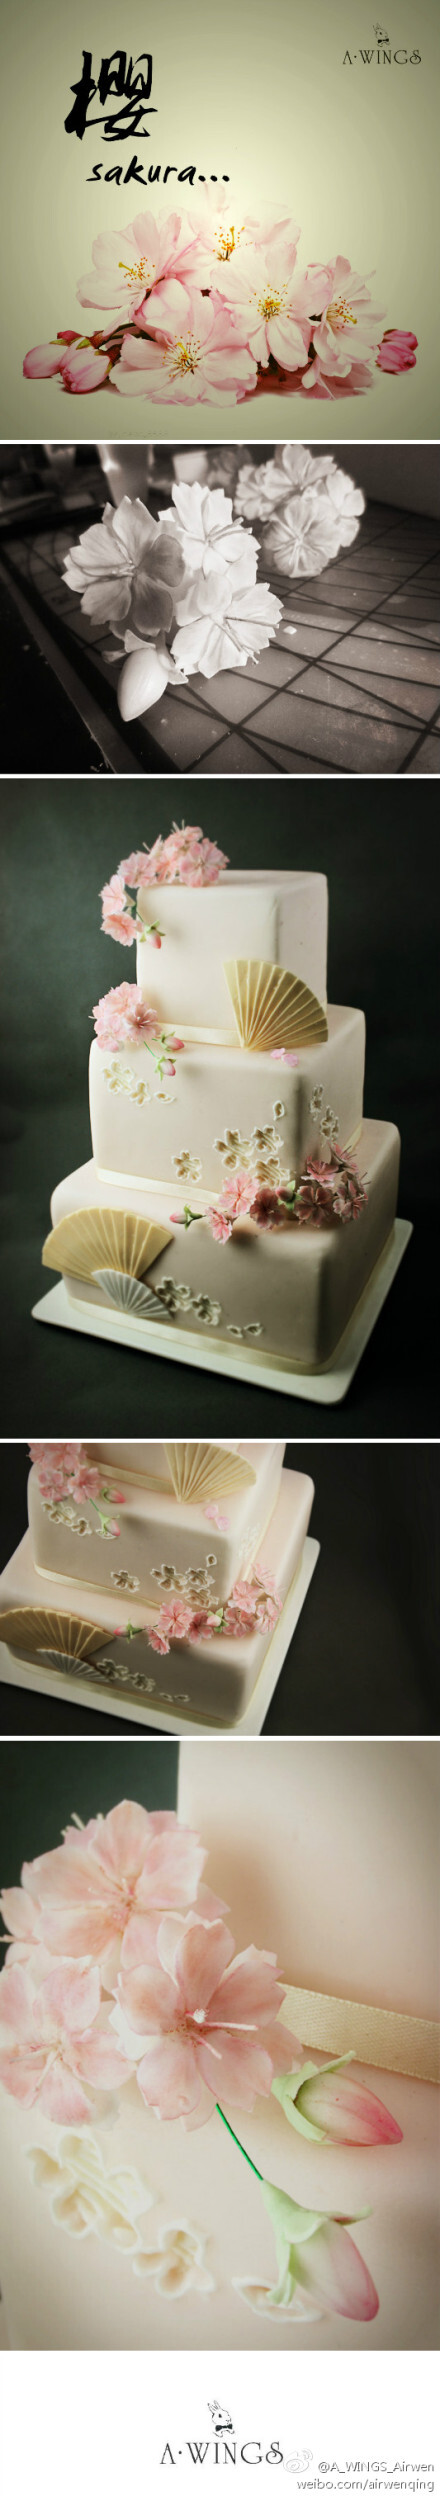 翻糖蛋糕。不同种类的樱花有不同的花语。重瓣樱，代表着文静纯洁。即使看不到樱花，也可以做一款和风的蛋糕。为了区别于蛋糕的底色，没有用粉粉嫩嫩的花，而是加重了重瓣樱花的红。简洁的米色白色折扇也使整体造型更丰富。这样一款蛋糕，给如樱一样的人，干脆，纯净，美好